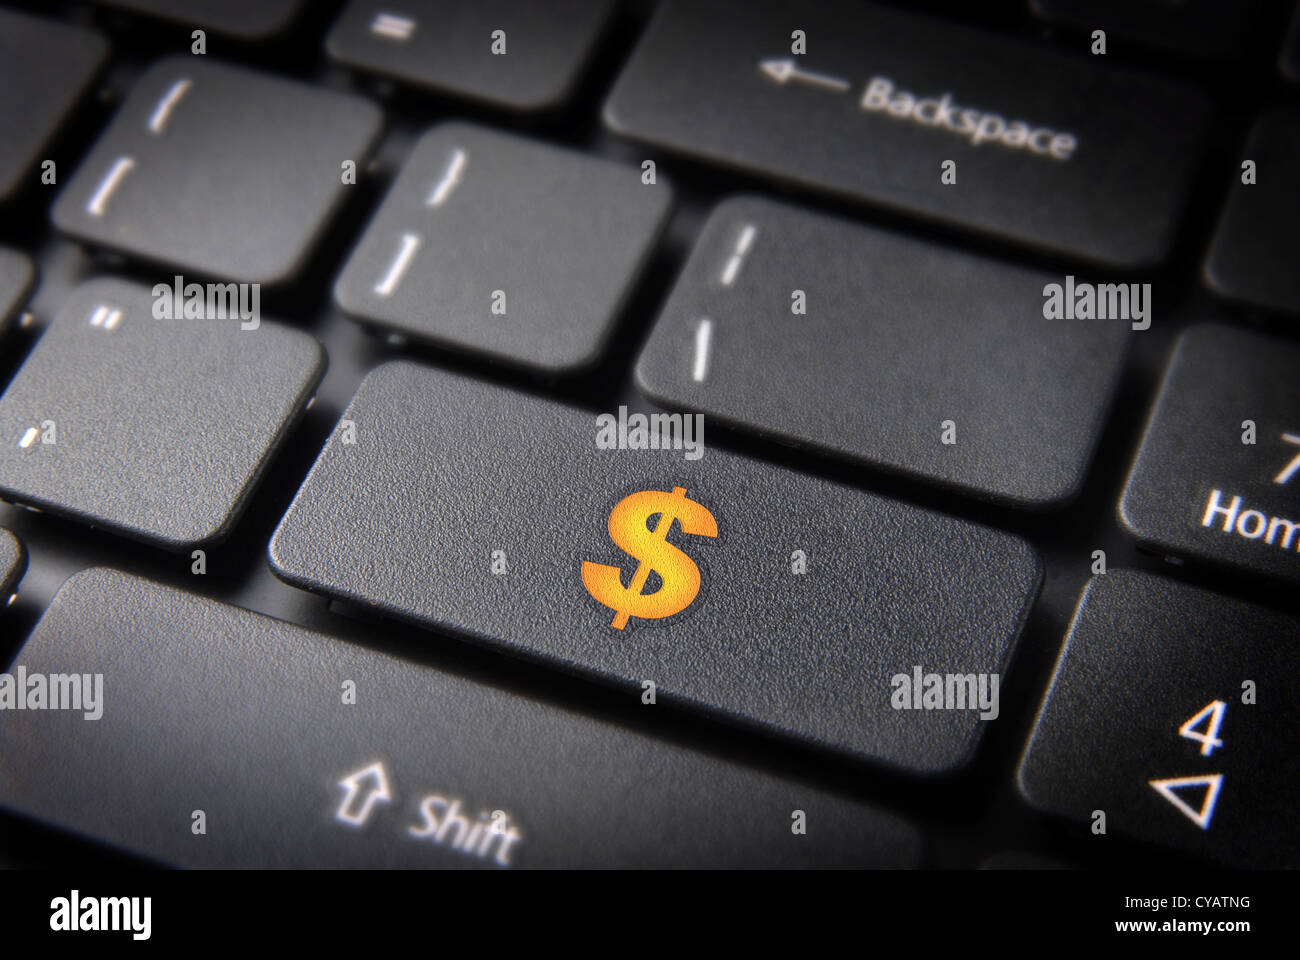 Ganar dinero con internet: amarillo Símbolo de moneda del dólar sobre el teclado del portátil. Trazado de recorte incluido, así que usted puede editar fácilmente. Foto de stock